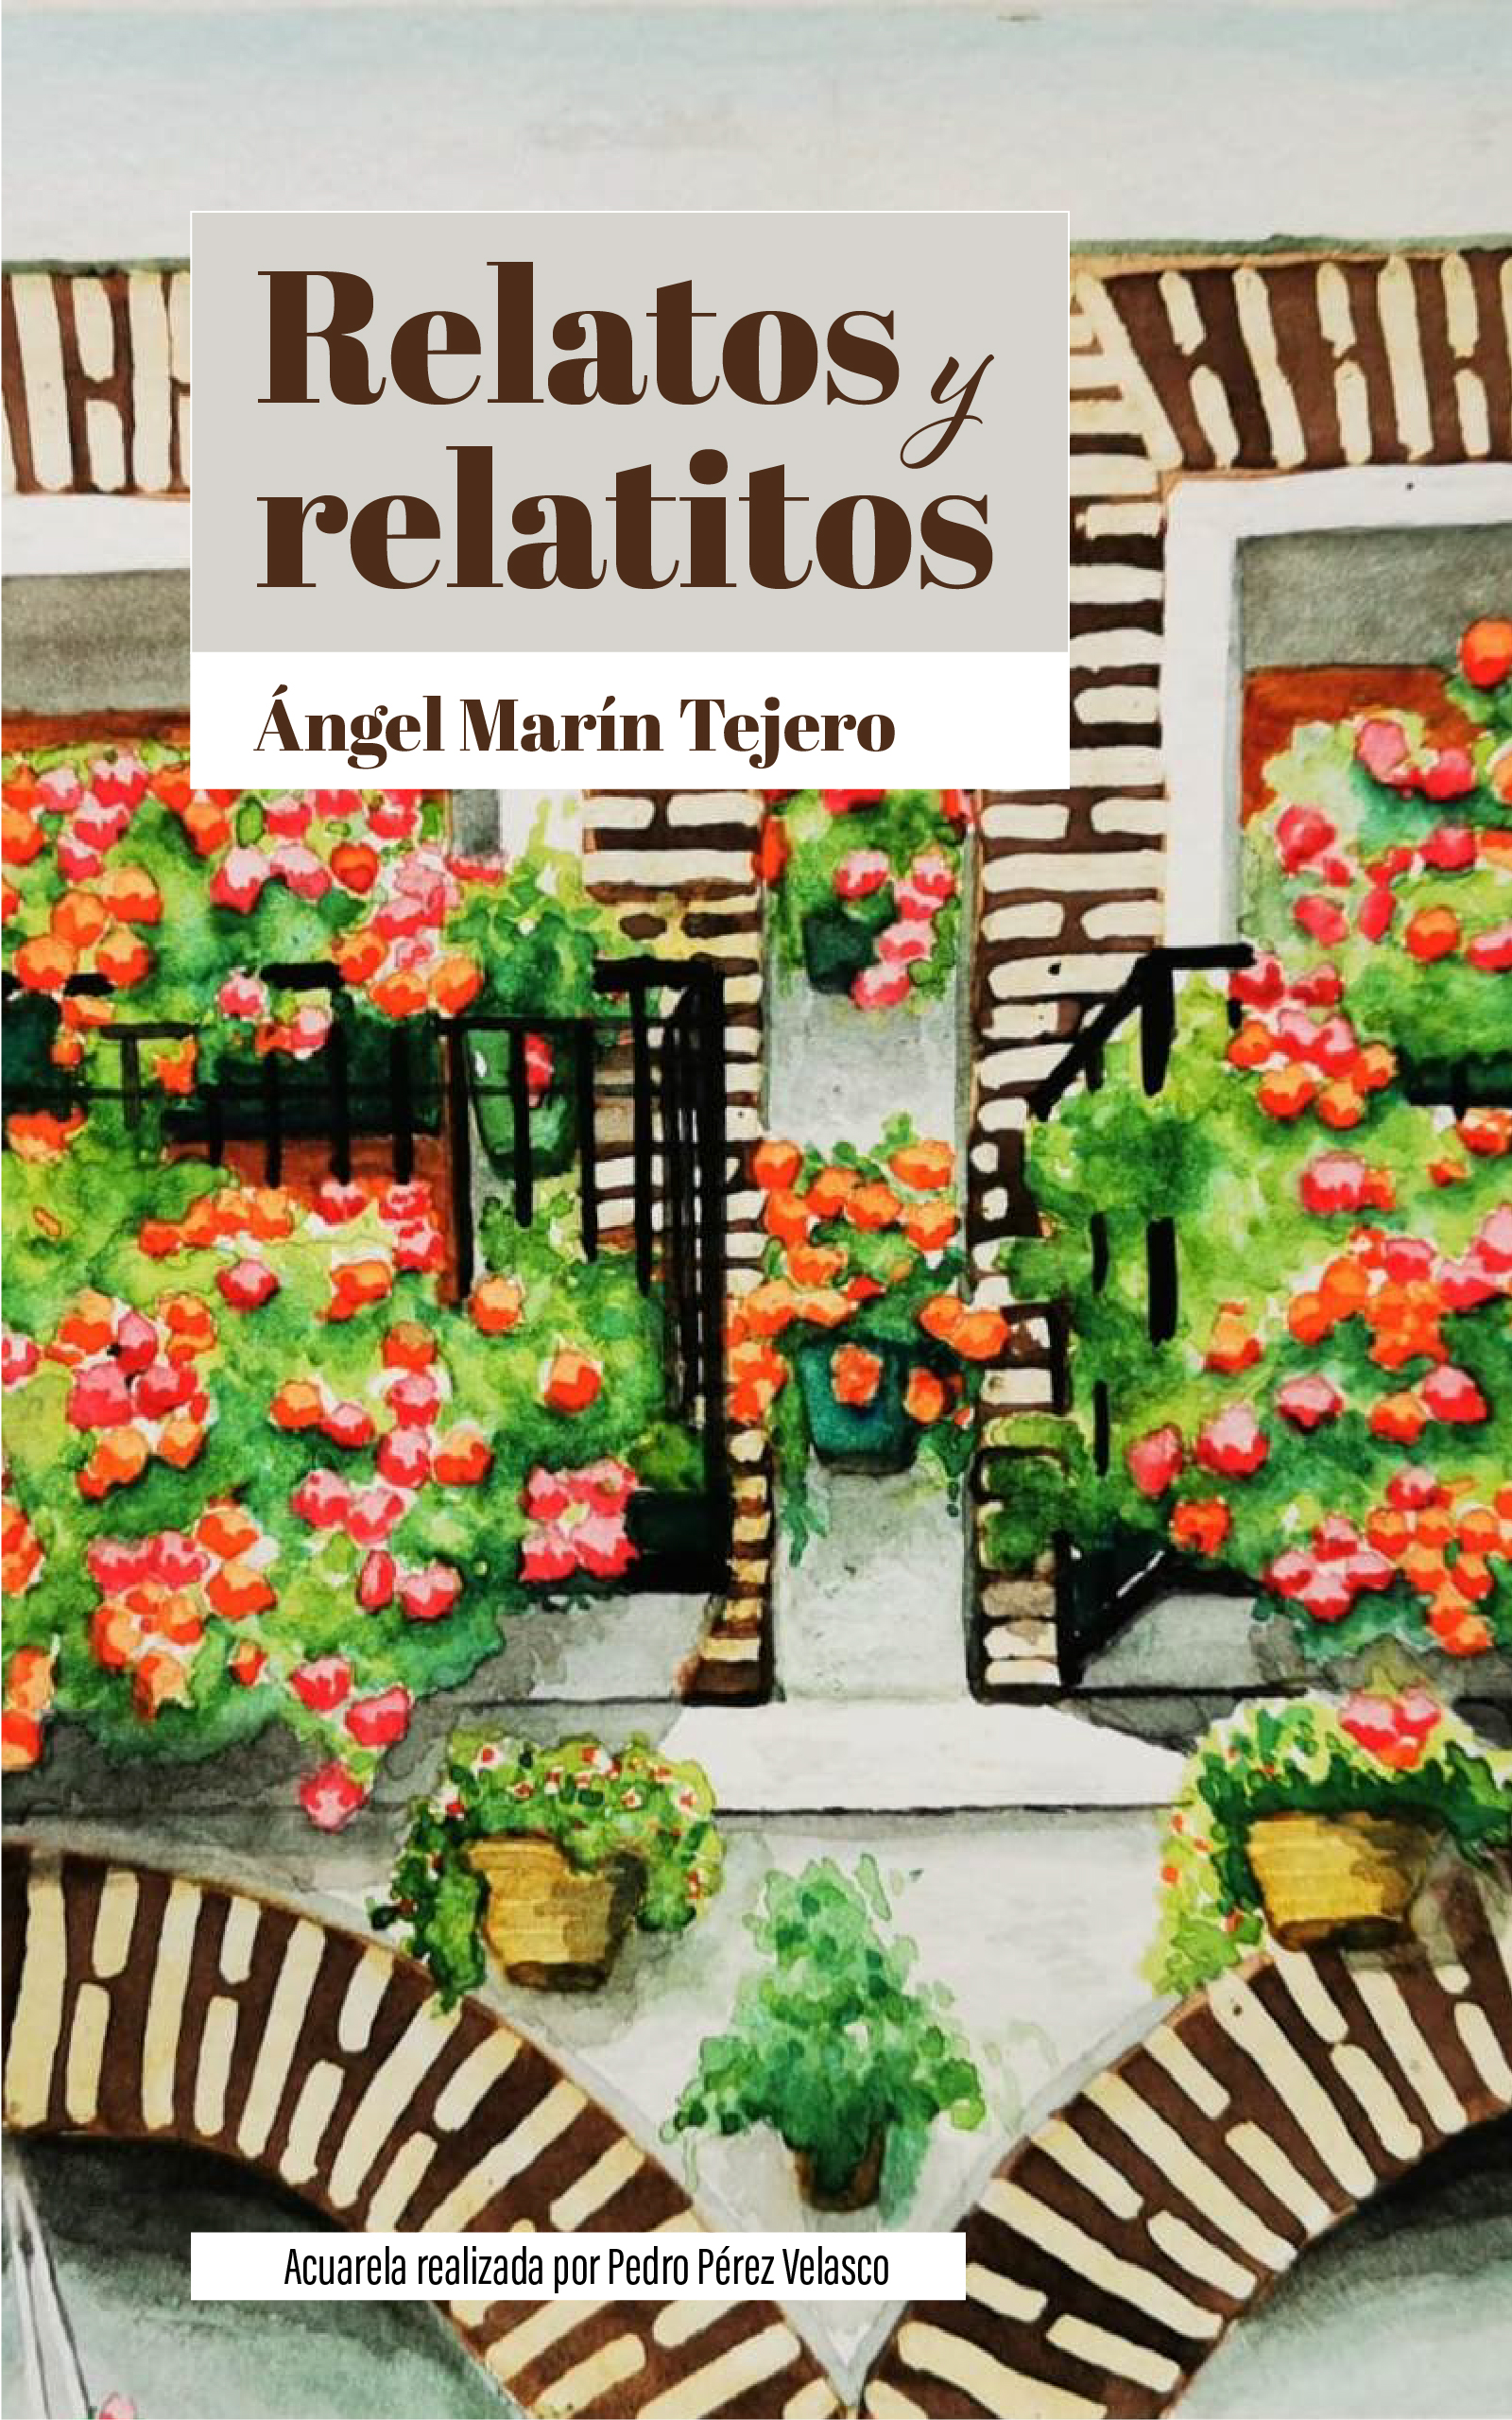 Relatos y relatitos, de Ángel Marín Tejero